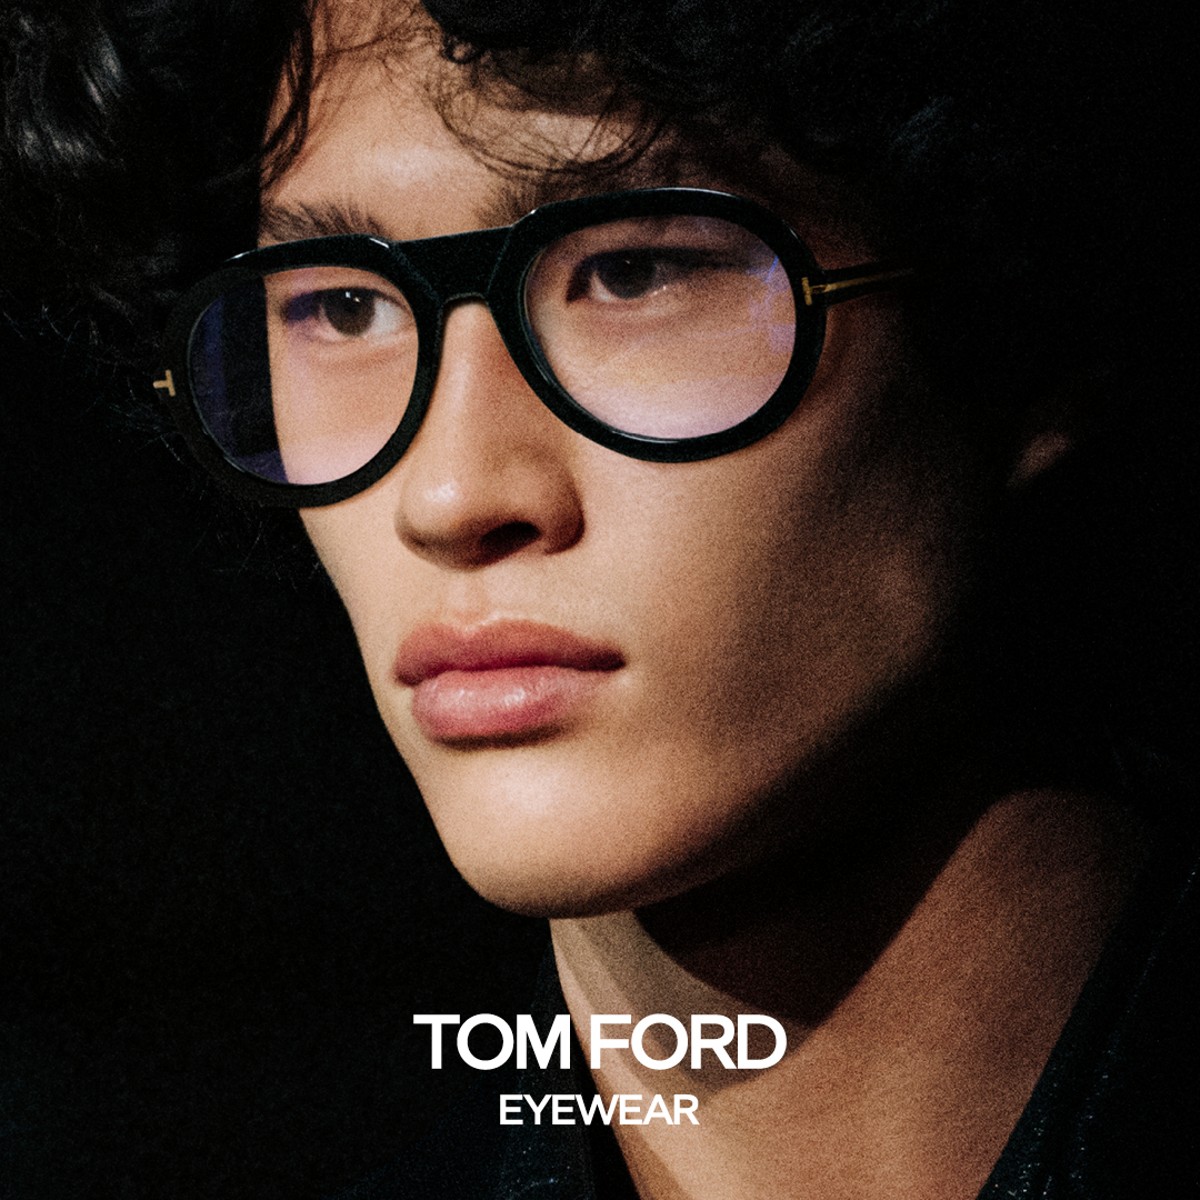 Tom Ford Eyewear Eye Candy Optical